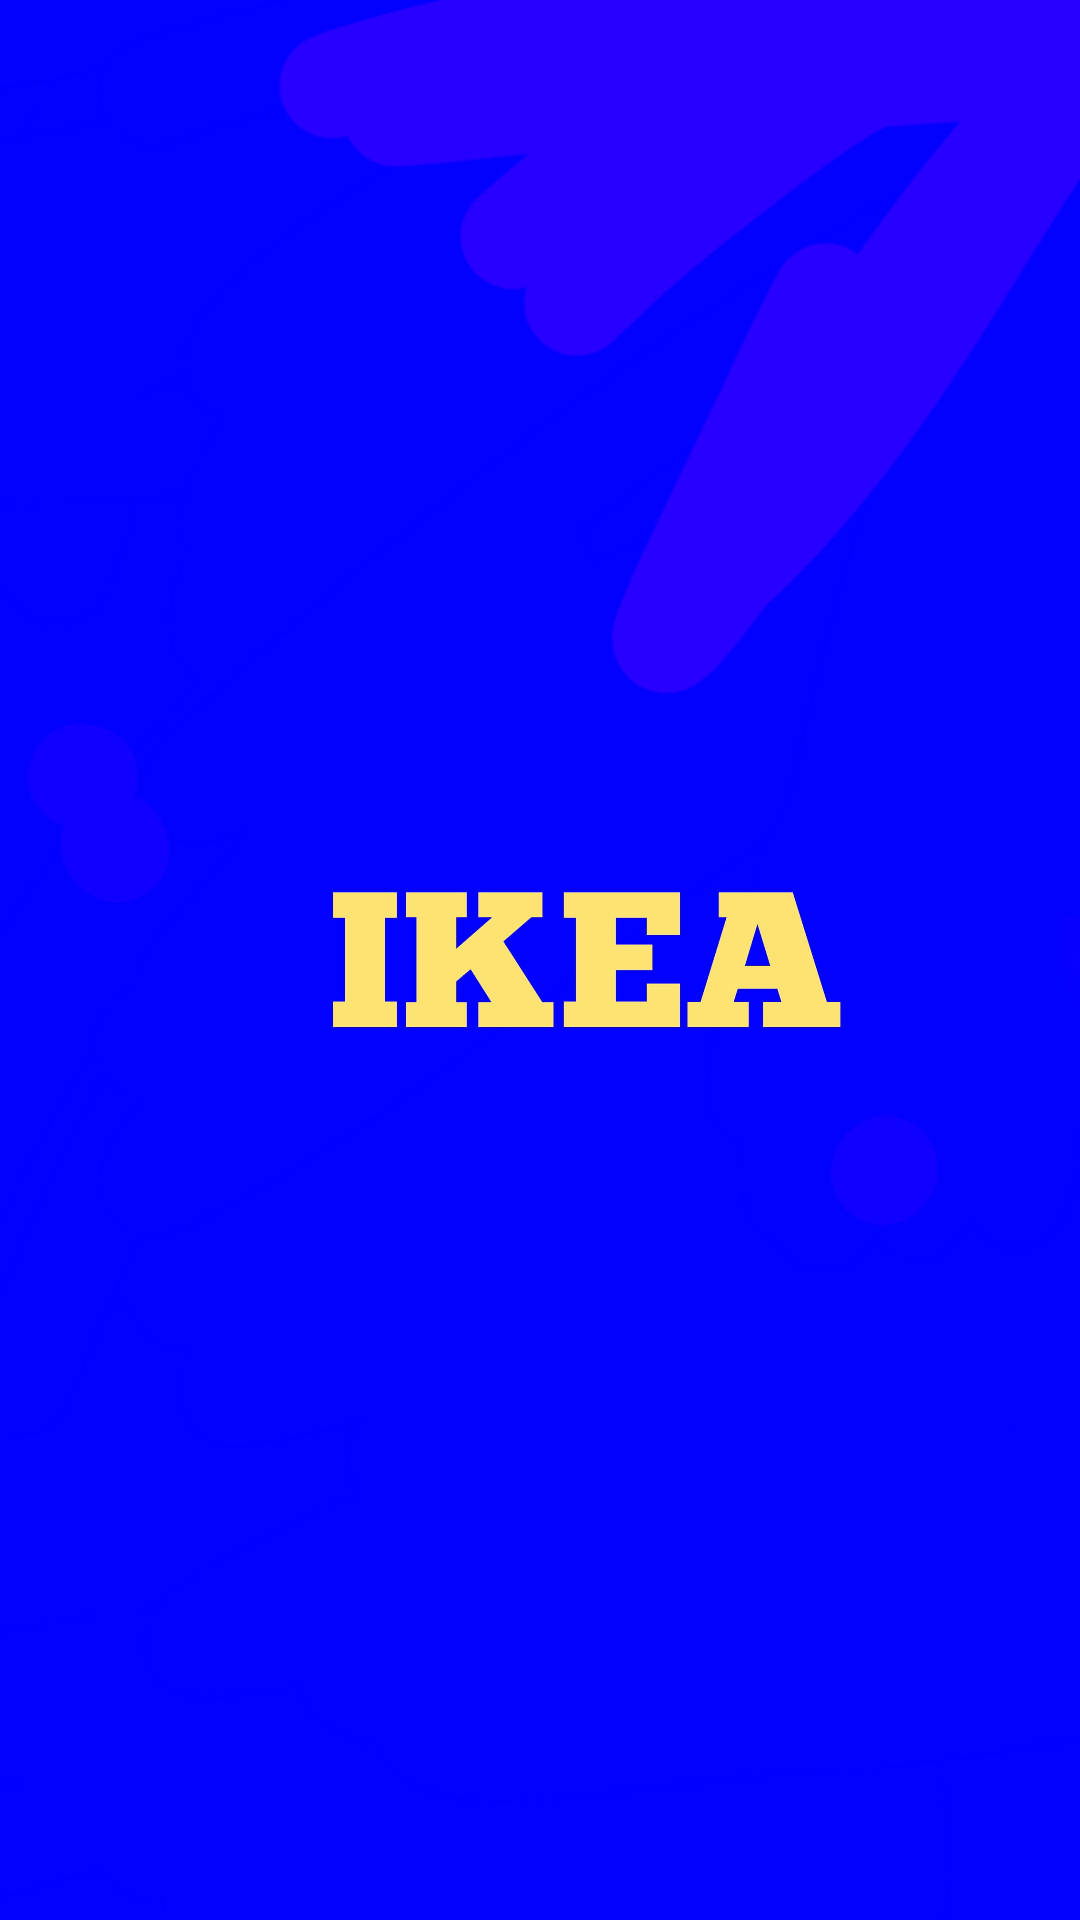 Logosimples Da Ikea Em Azul. Papel de Parede